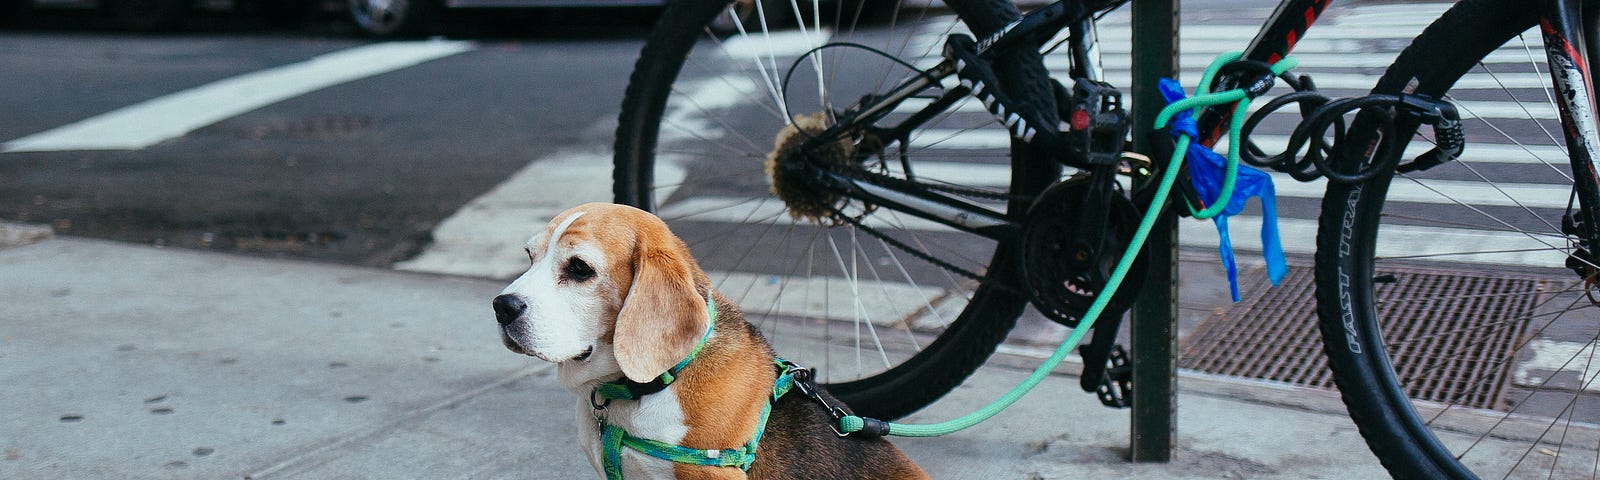 a dog leashed to a bike